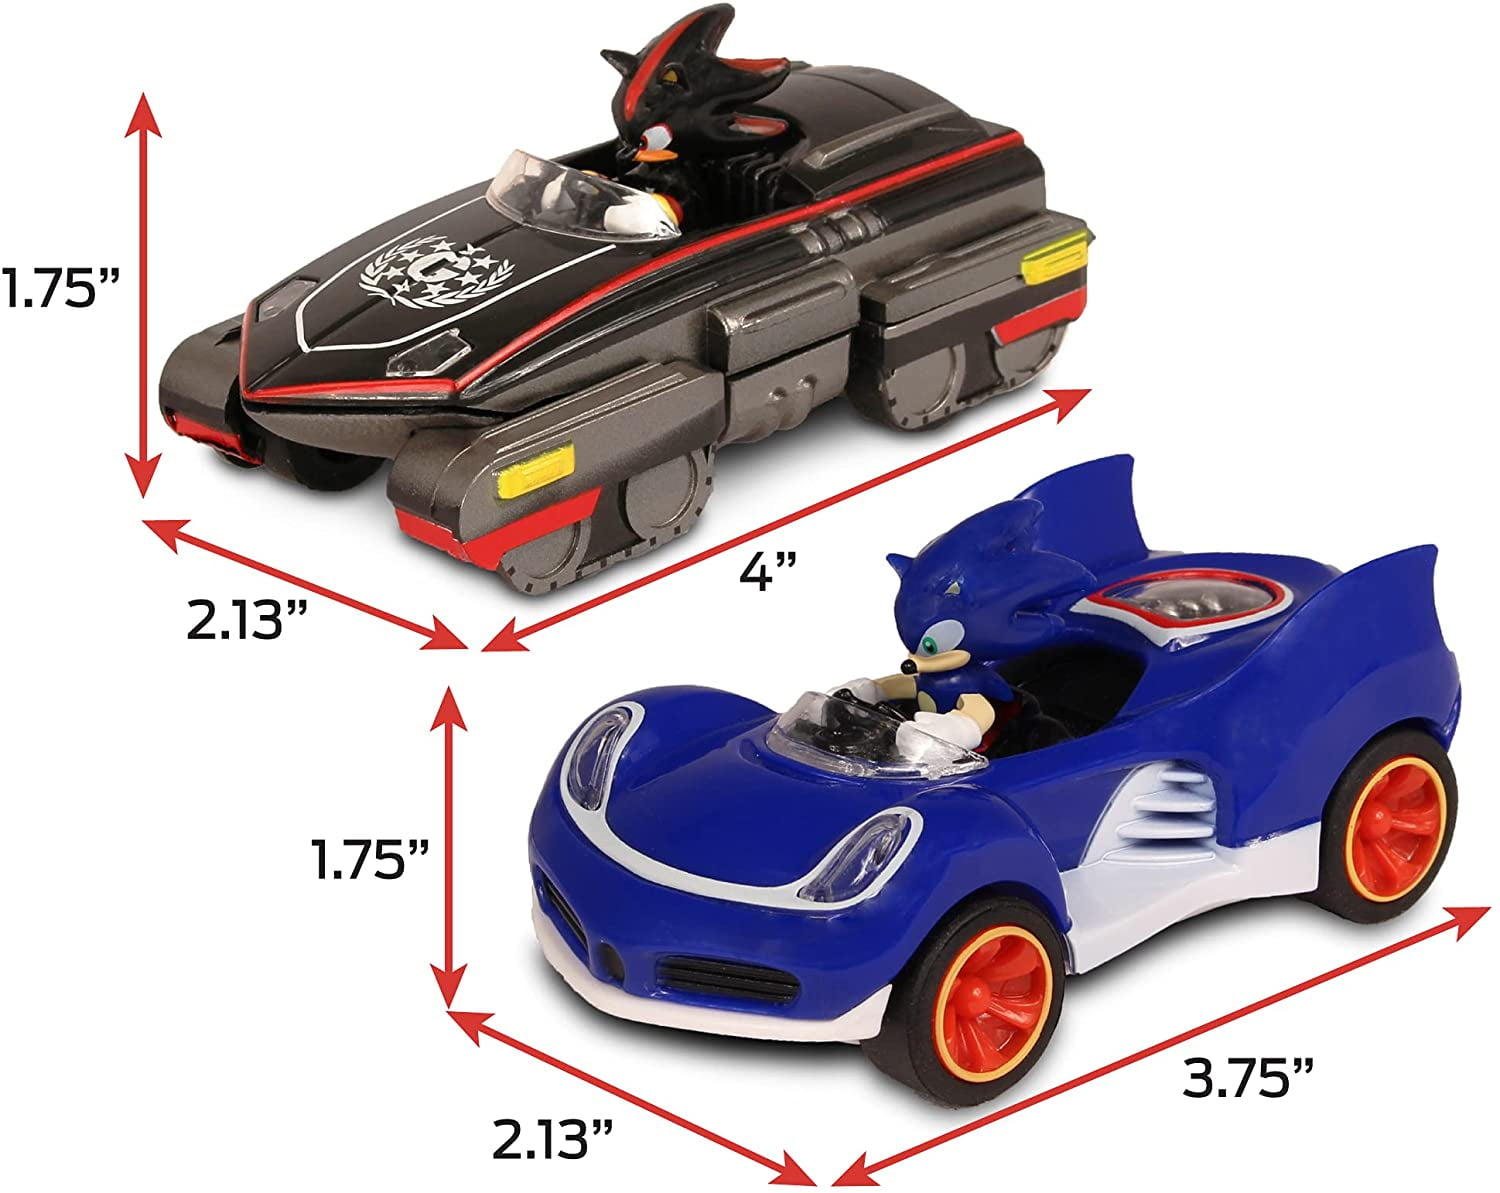 Jogo Sonic & All Star Racing Transformed Xbox 360 Sega com o Melhor Preço é  no Zoom